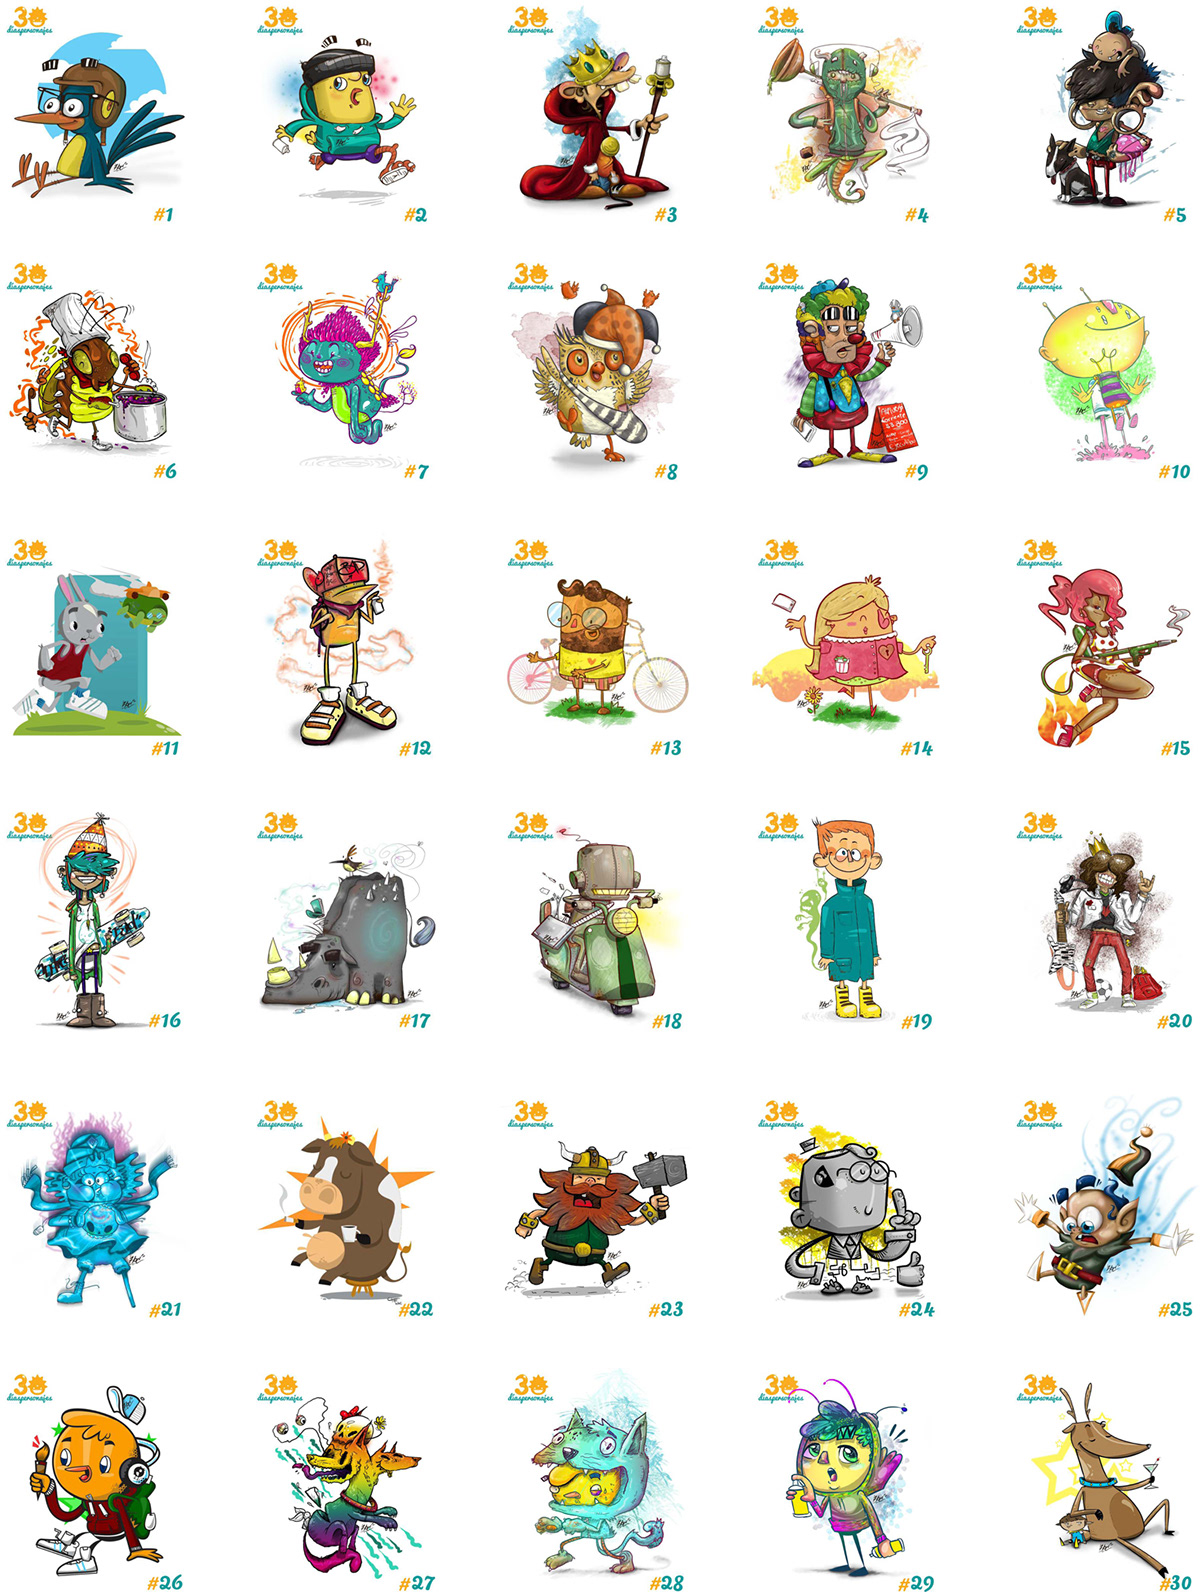 Dias personajes creación diseño ilustracion jose urbina characters